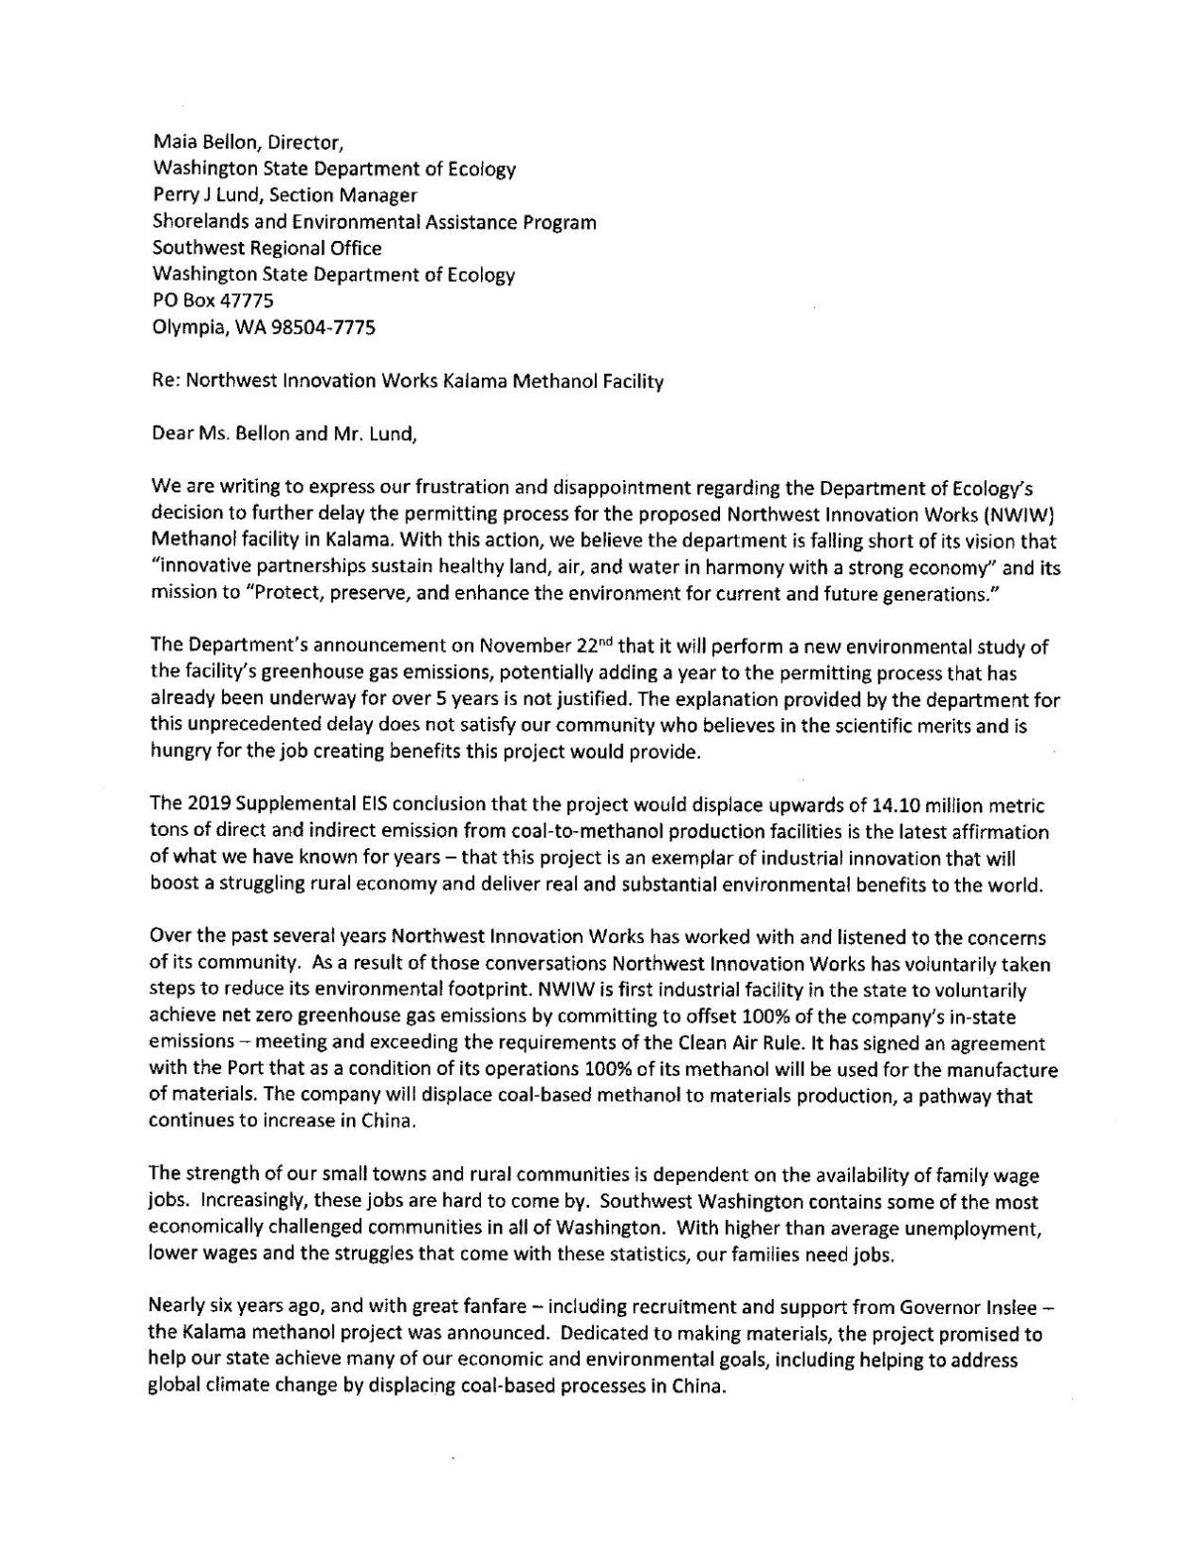 Cowlitz Economic Development Council letter to Department of Ecology